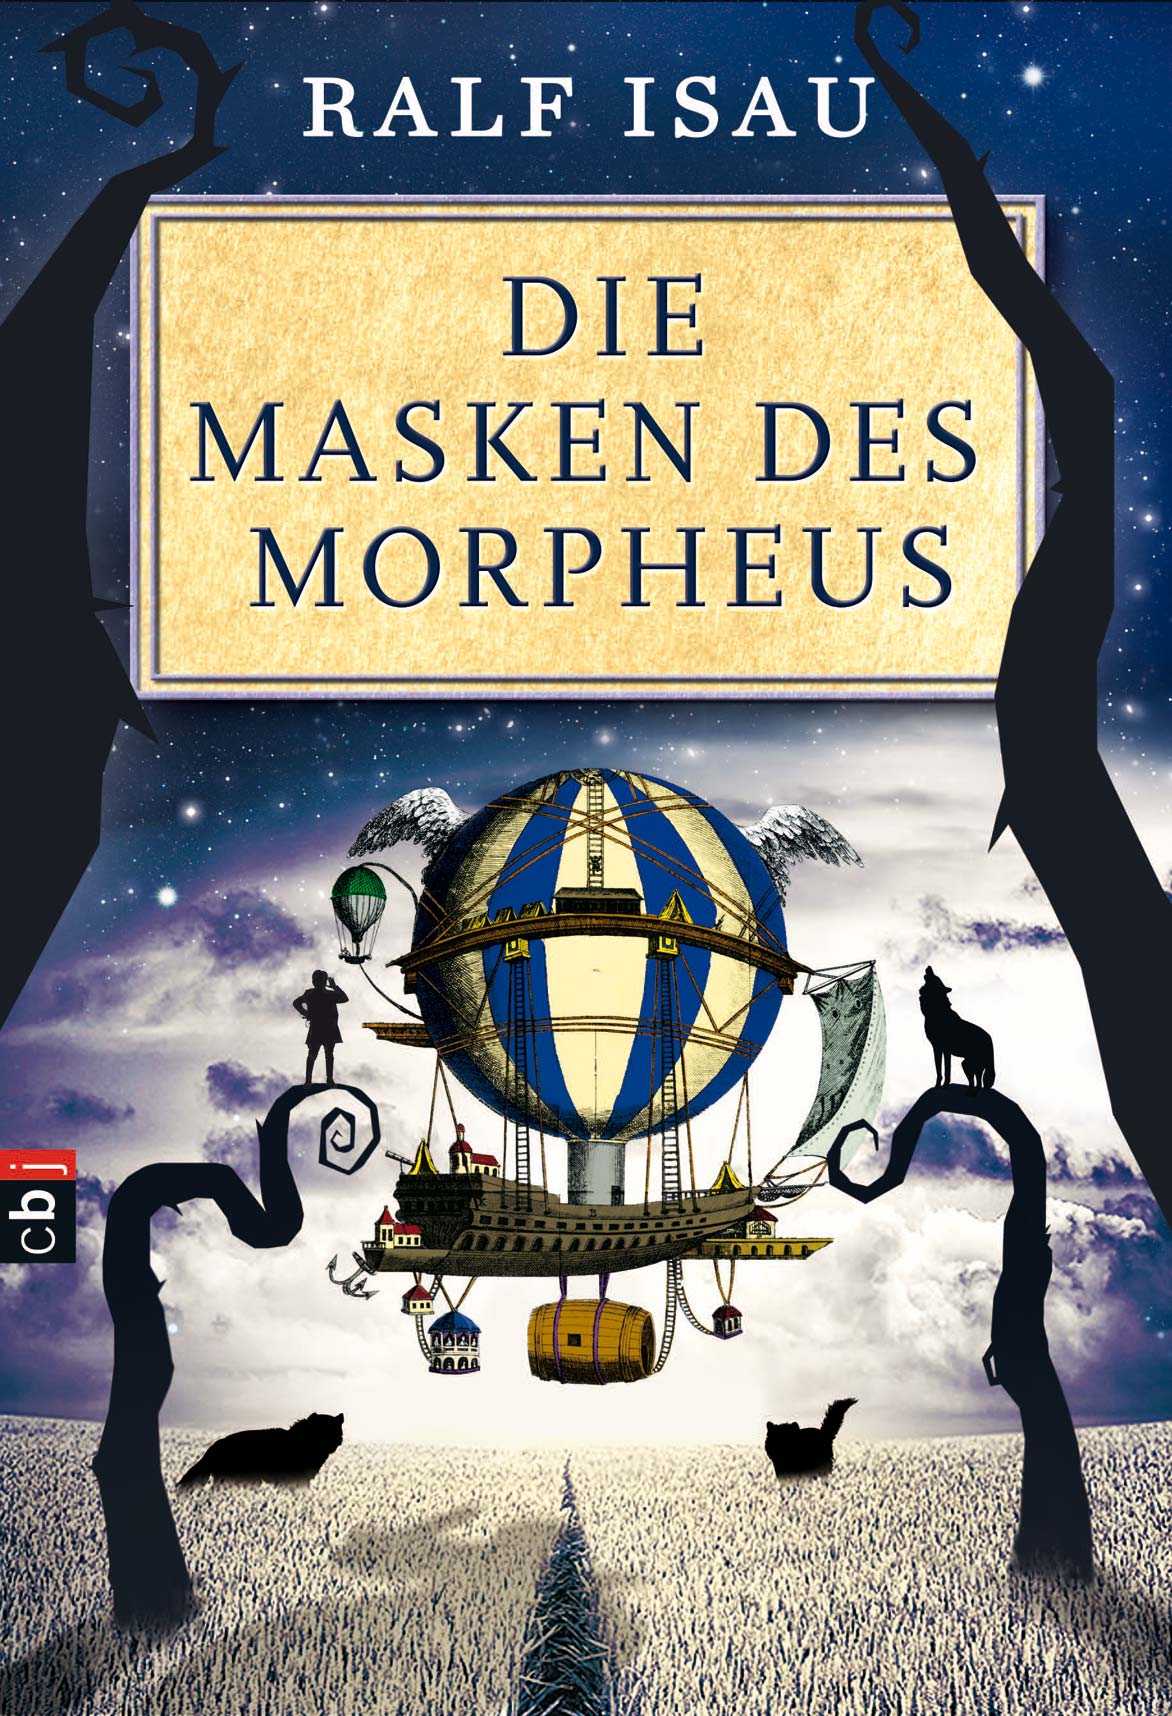 Die Masken des Morpheus